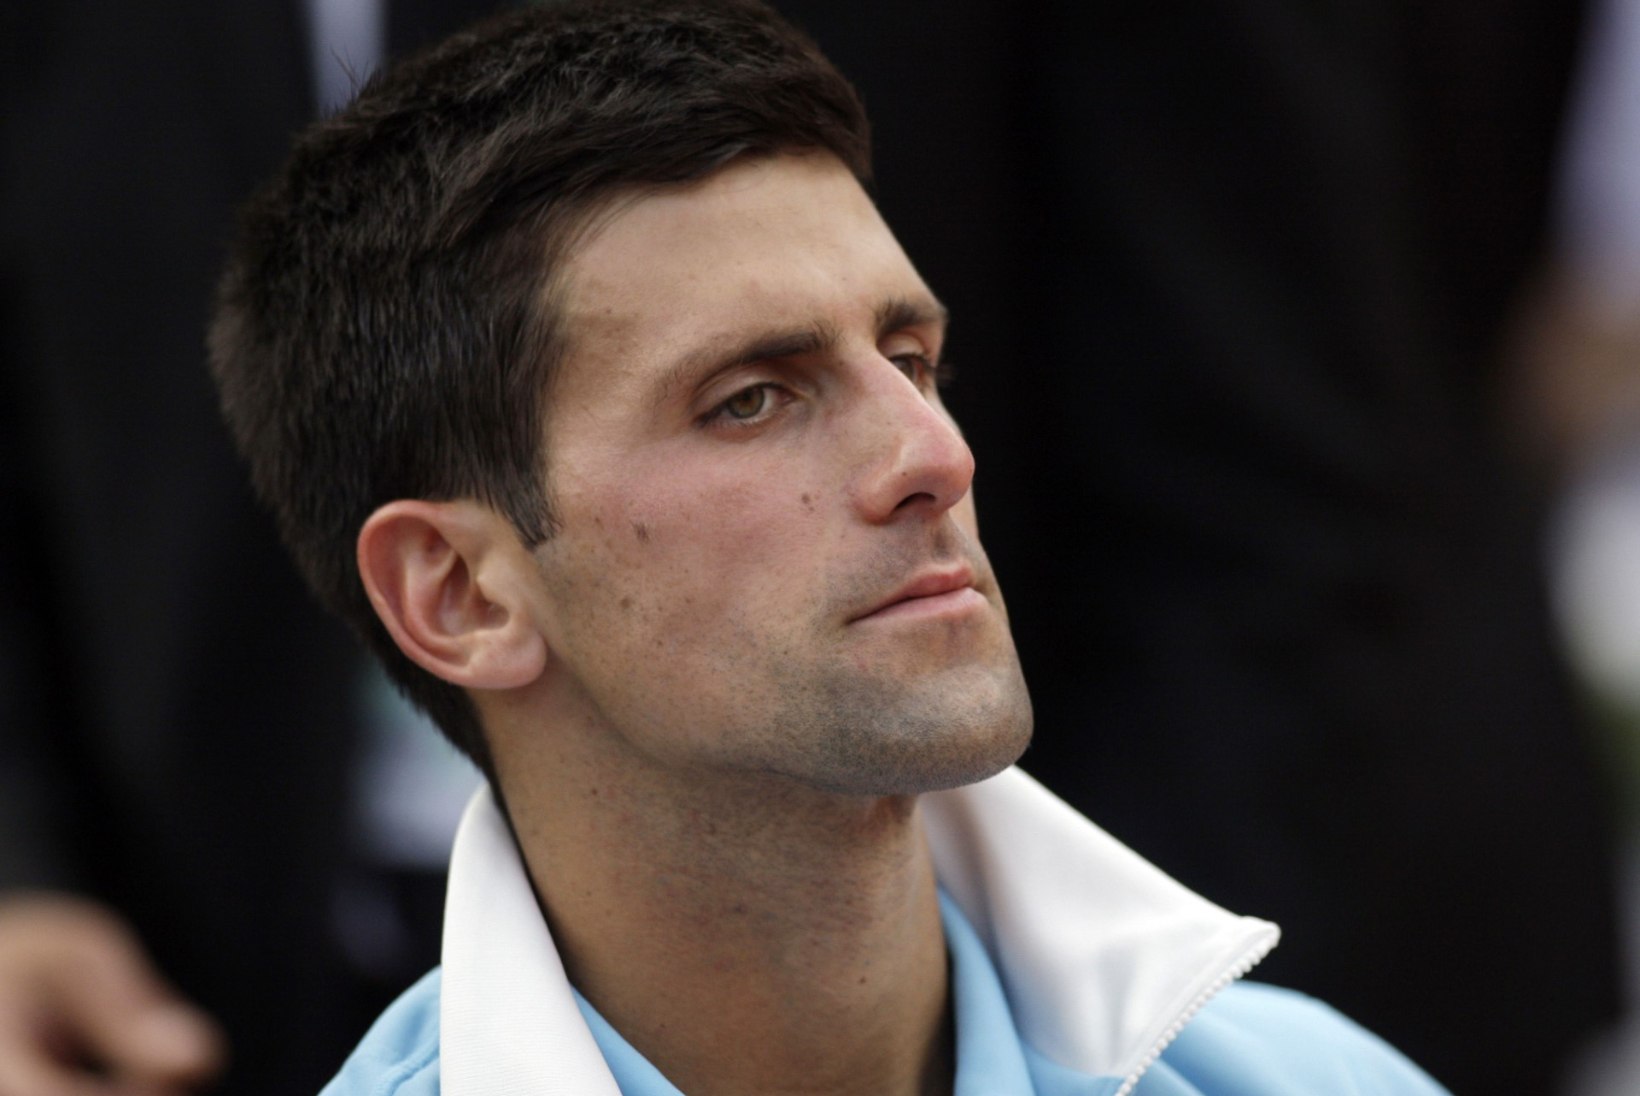 Kas Djokovici tabas vahetult enne Wimbledoni vigastus?